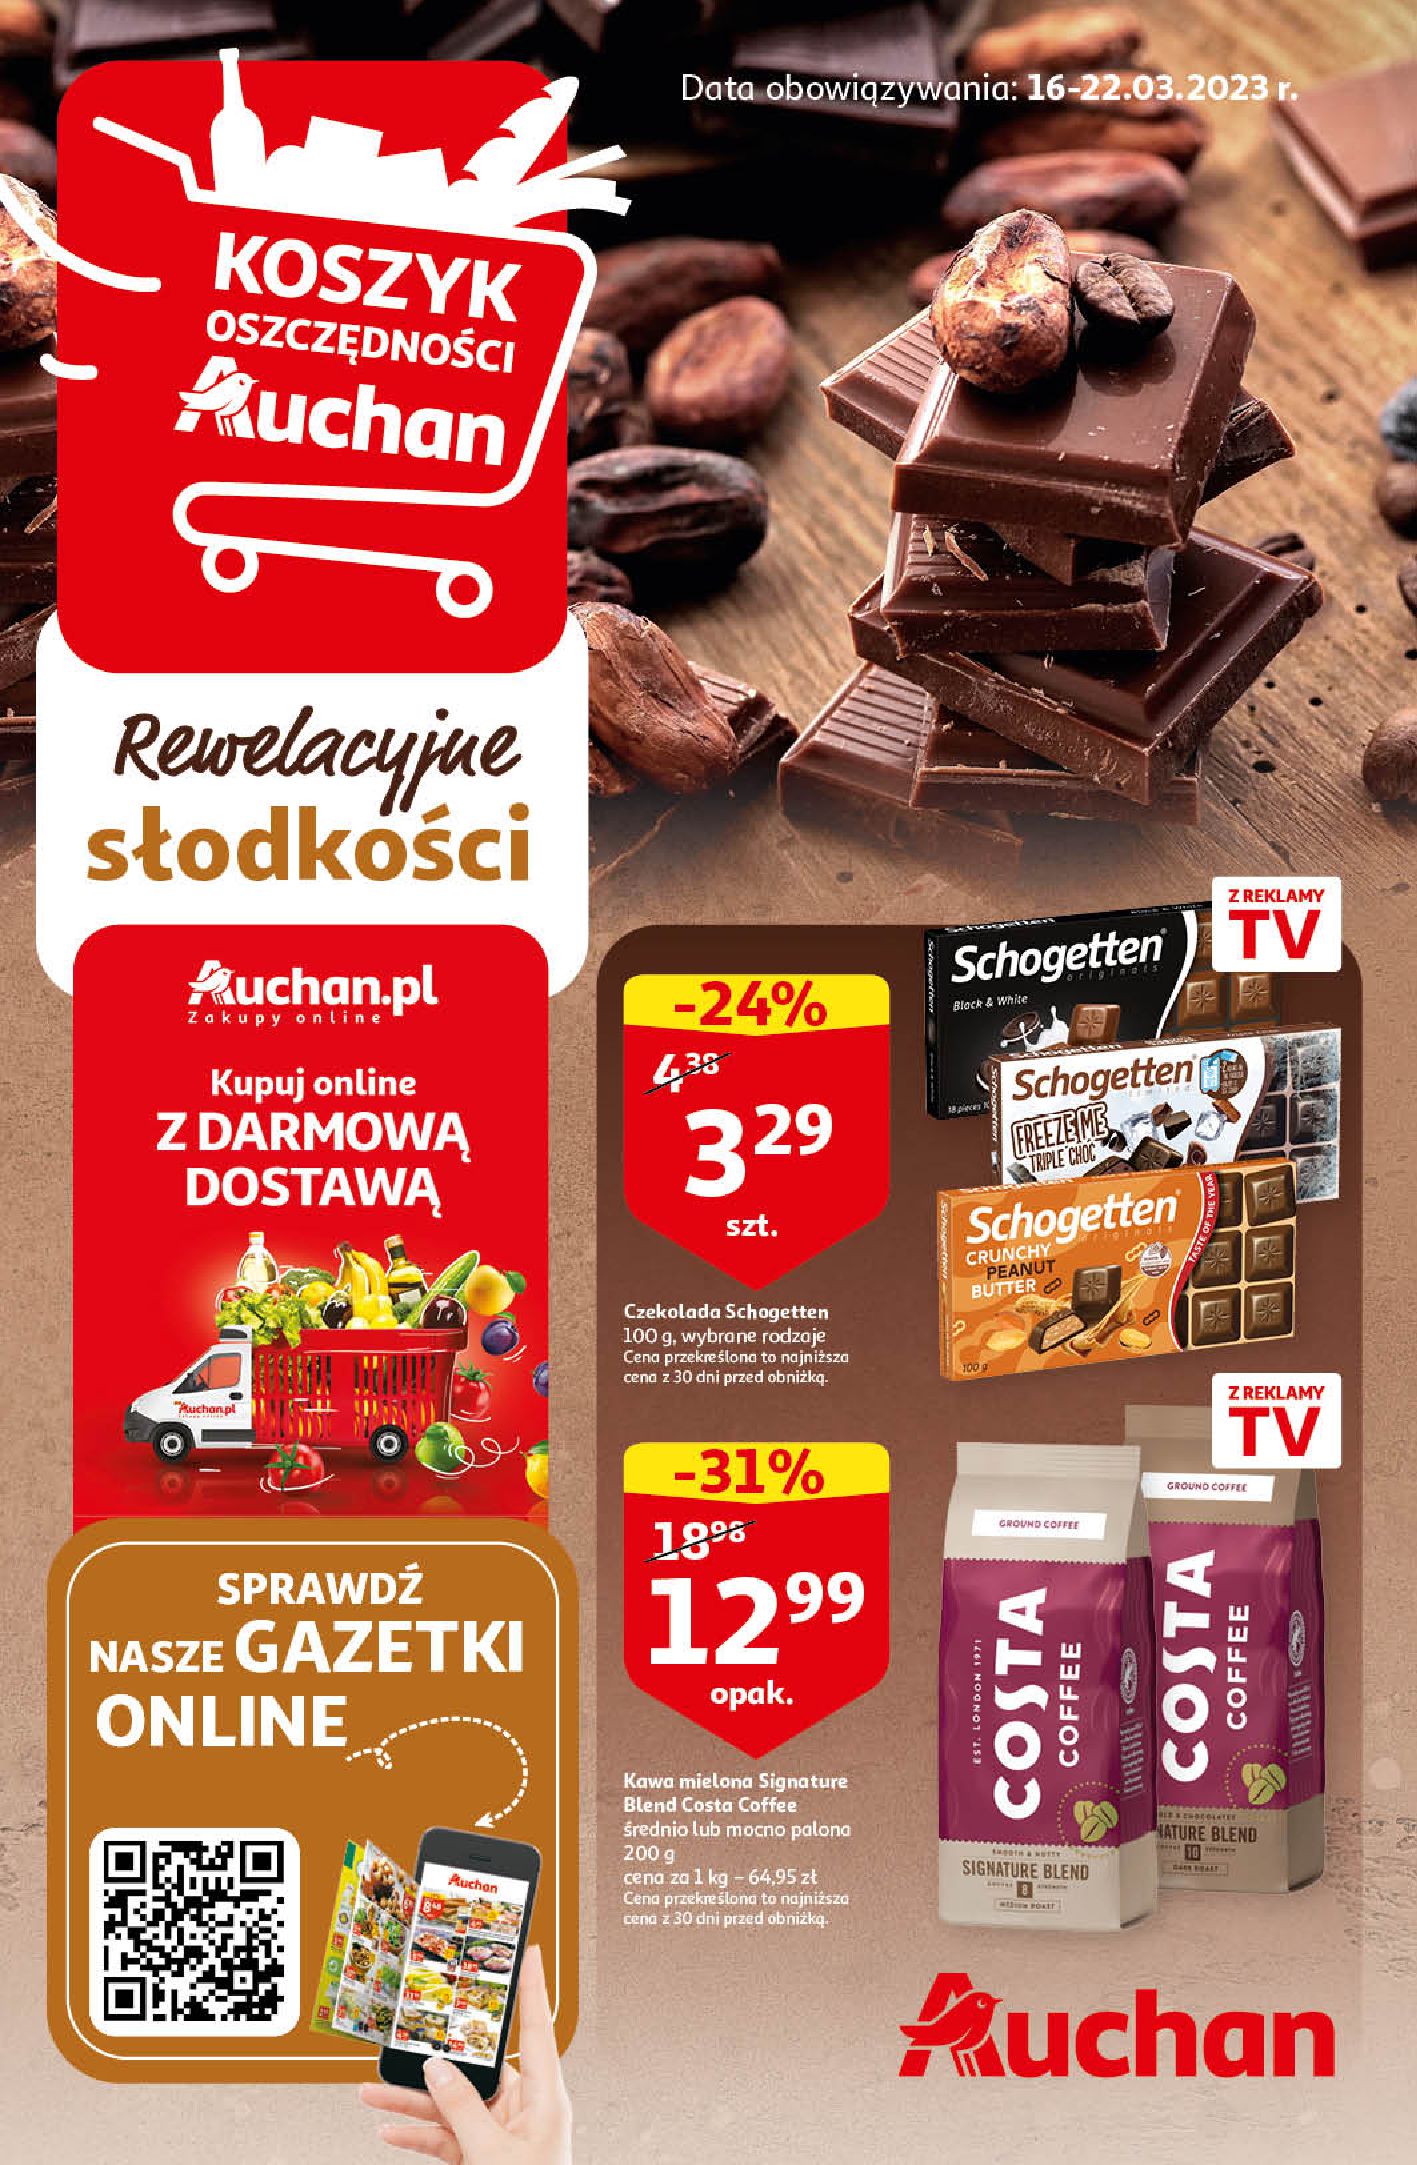 Gazetka Auchan: Gazetka Auchan do 22.03. 2023-03-16 page-1